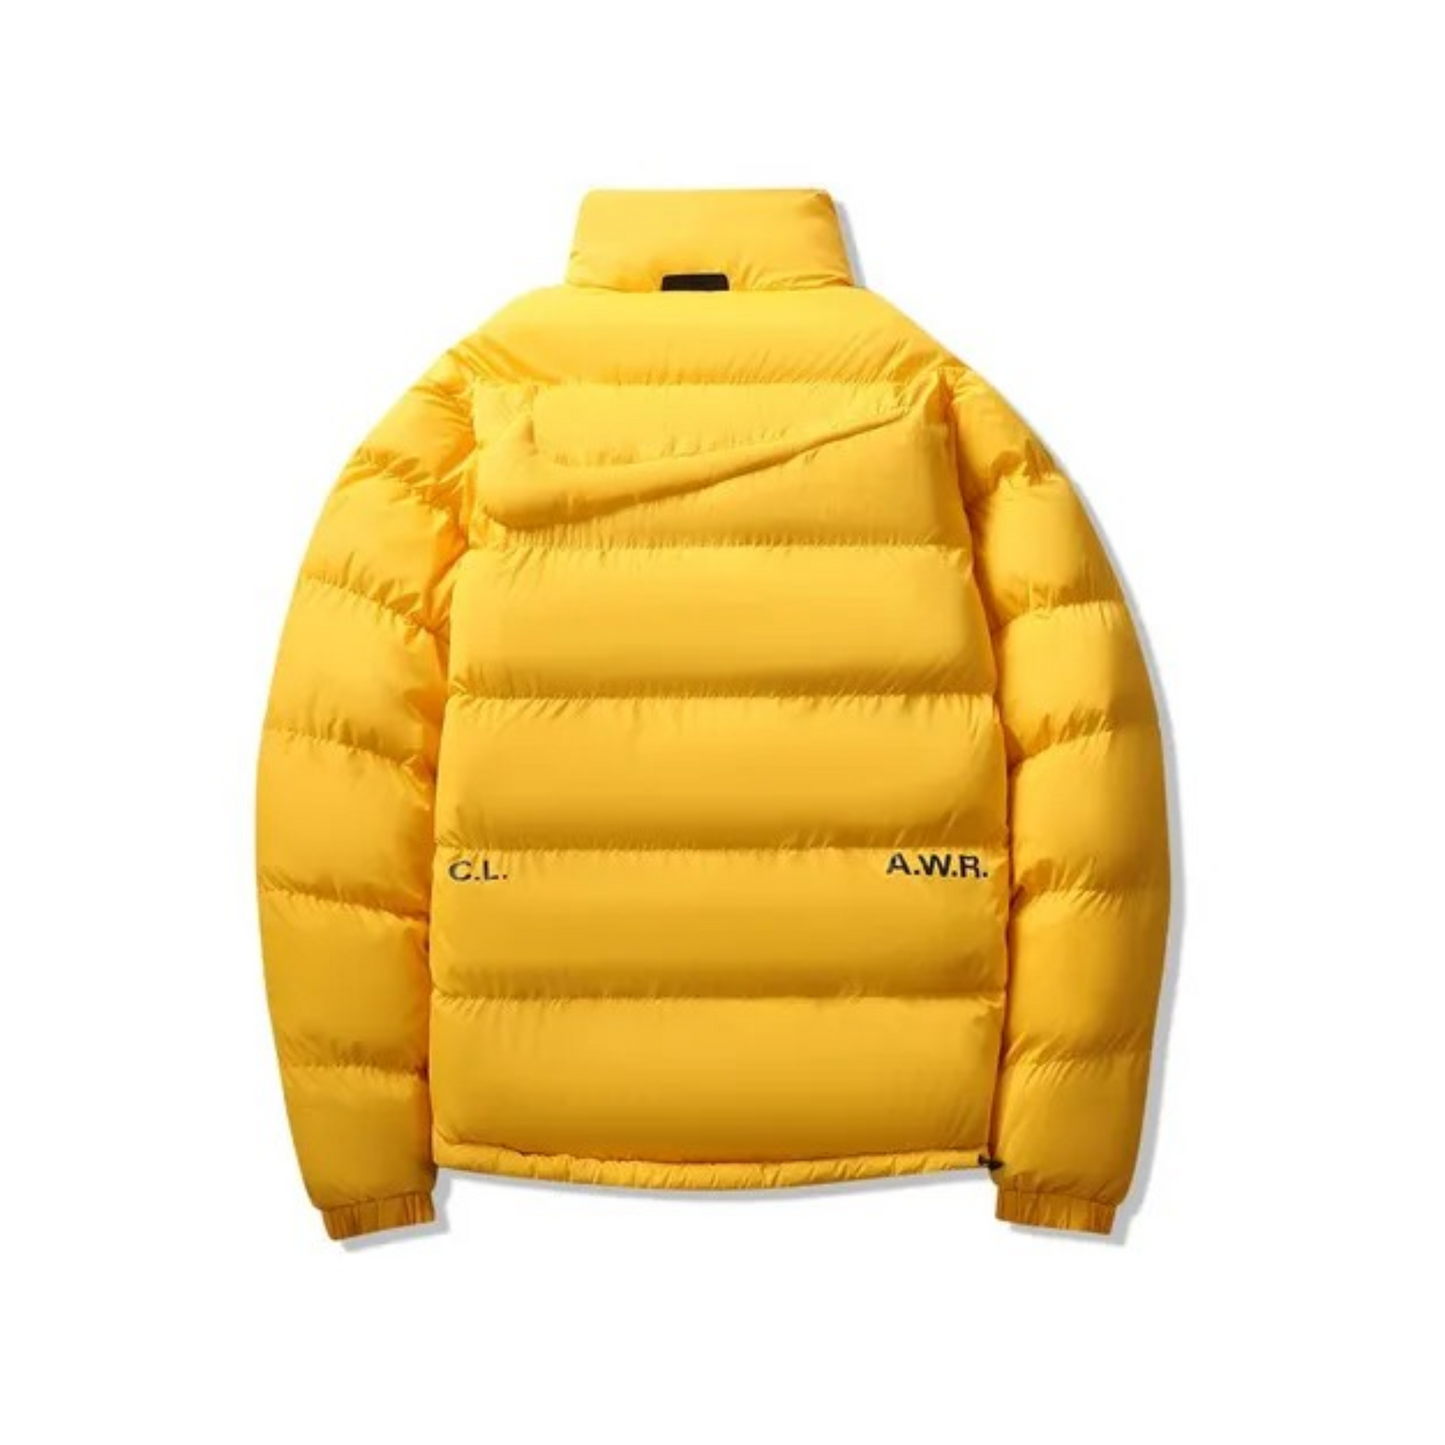 Drake x Nike NOCTA Puffer Jacket "Yellow"